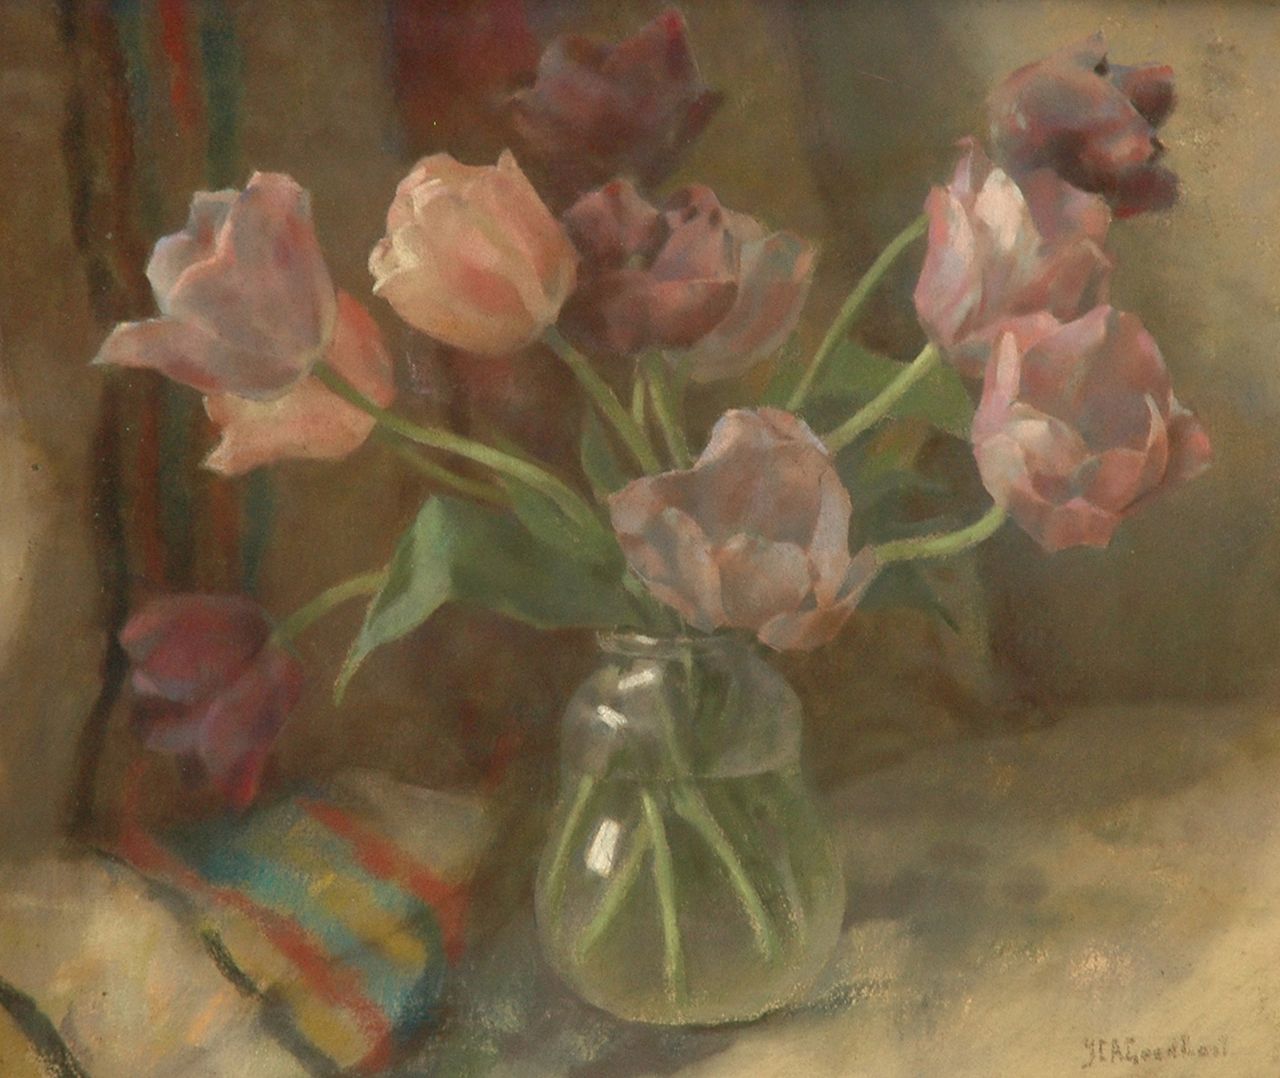 Goedhart J.C.A.  | 'Jan' Catharinus Adriaan Goedhart, Tulpen in glazen vaas, pastel op doek 50,0 x 60,0 cm, gesigneerd rechtsonder